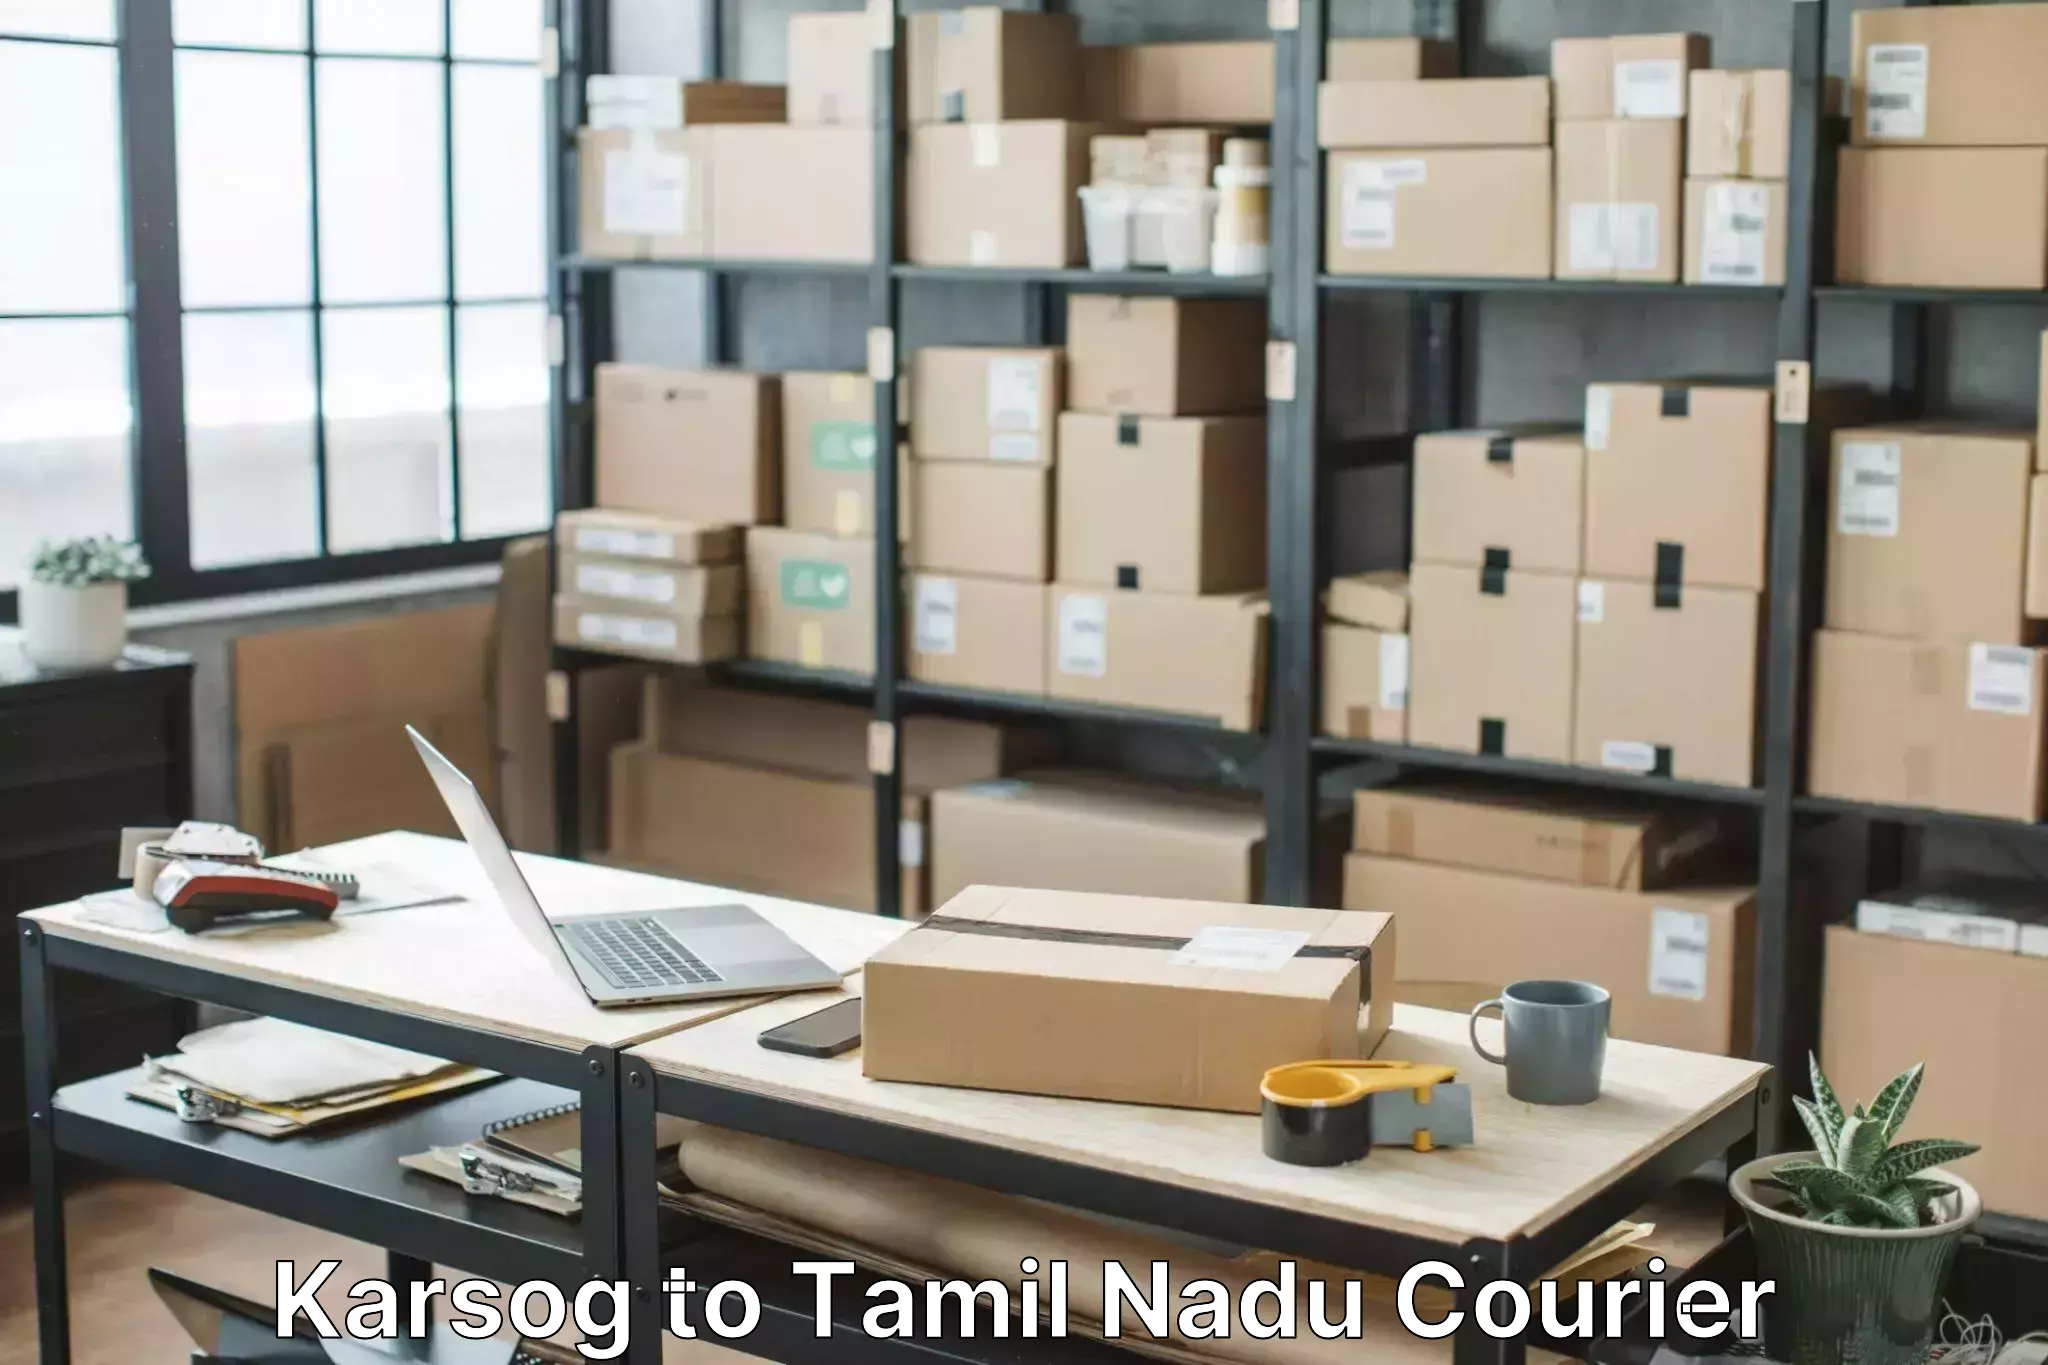 Home relocation experts Karsog to Tamil Nadu